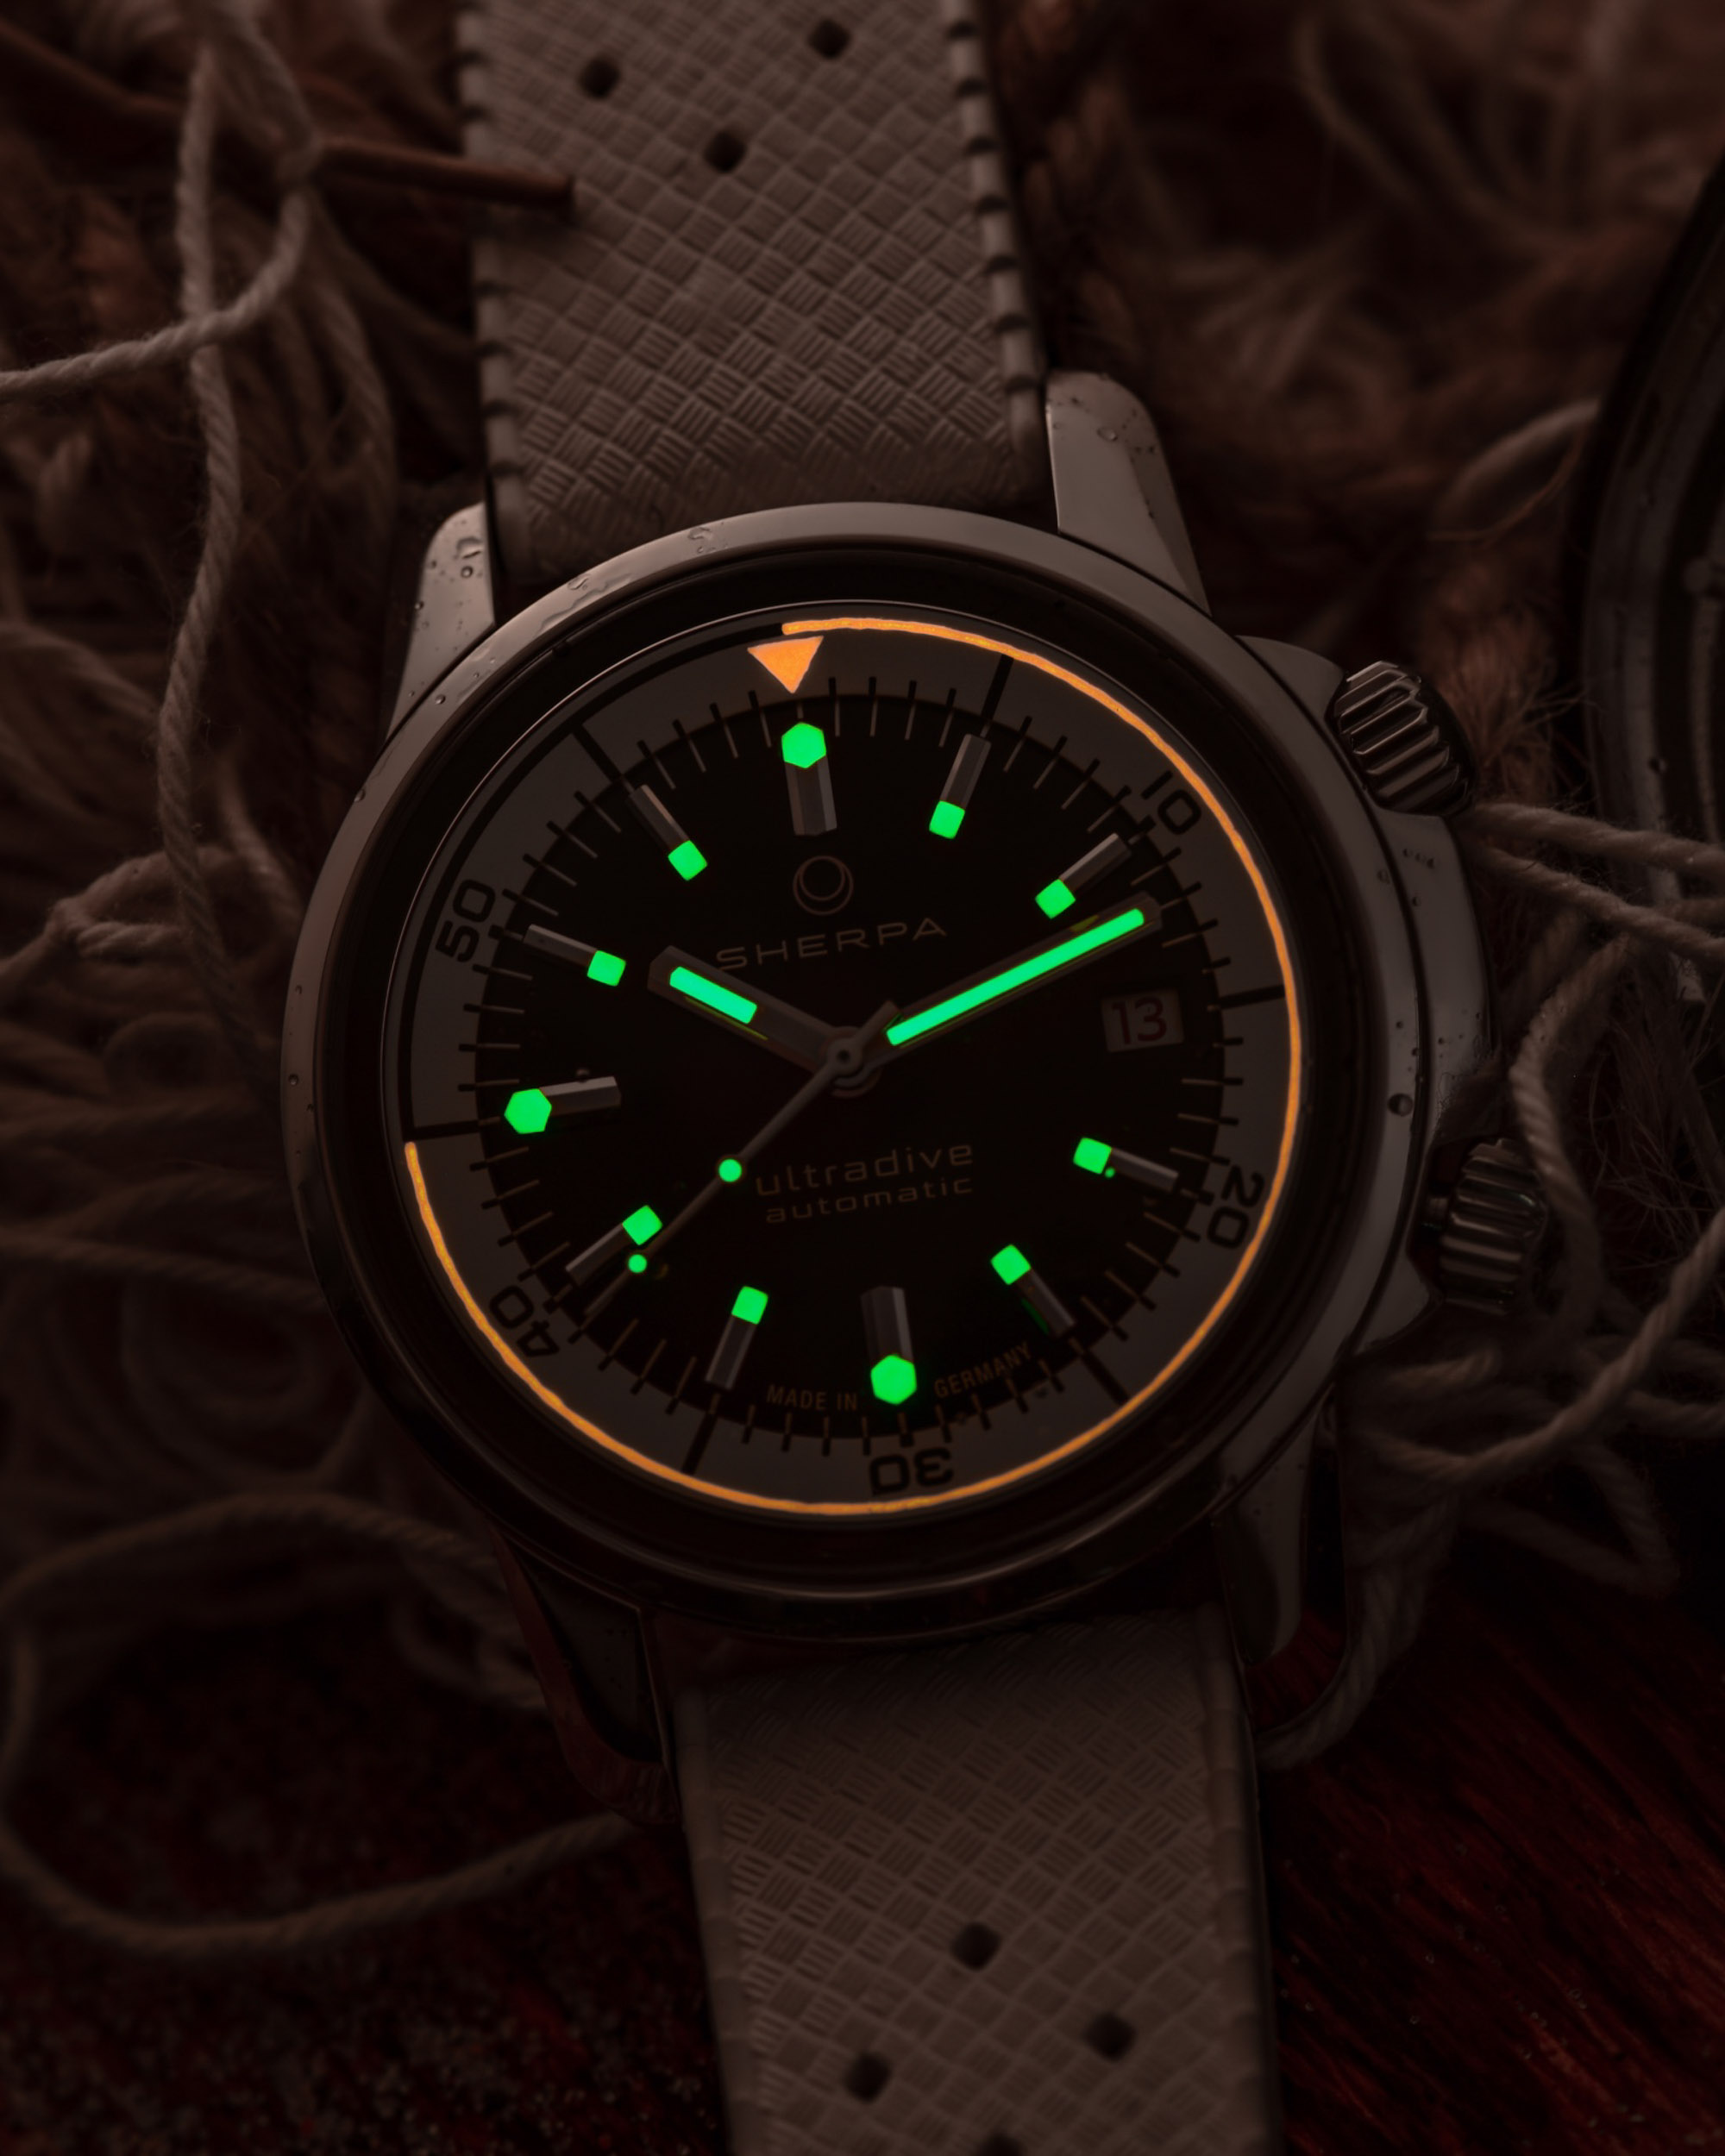 Обзор наручных часов: Sherpa Ops, настоящие современные компрессорные часы для дайвинга